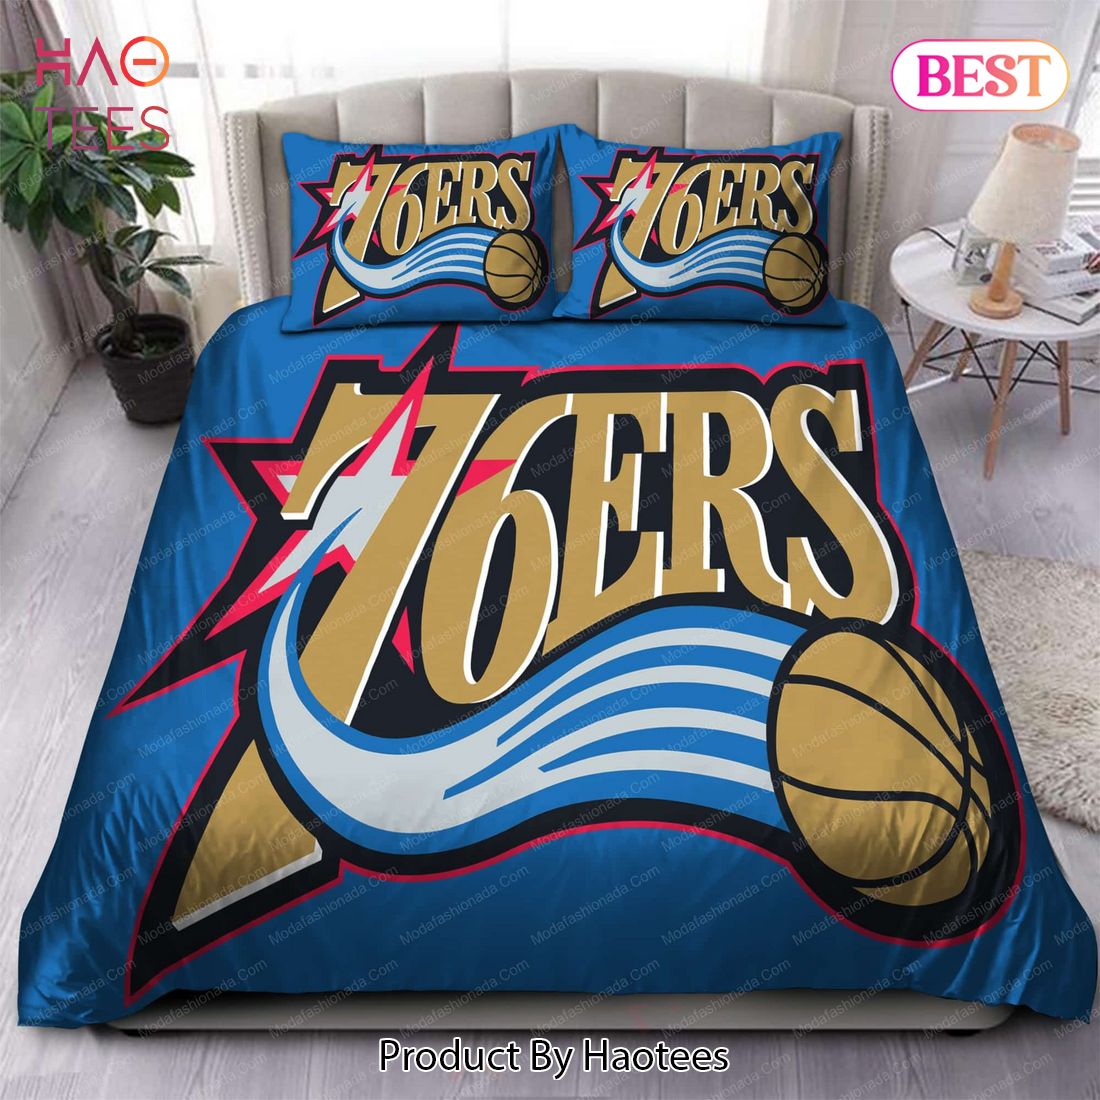 Buy 1998-2009 NBA Philadelphia 76ers Logo 111 Bedding Sets Bed Sets, Bedroom Sets, Comforter Sets, Duvet Cover, Bedspread